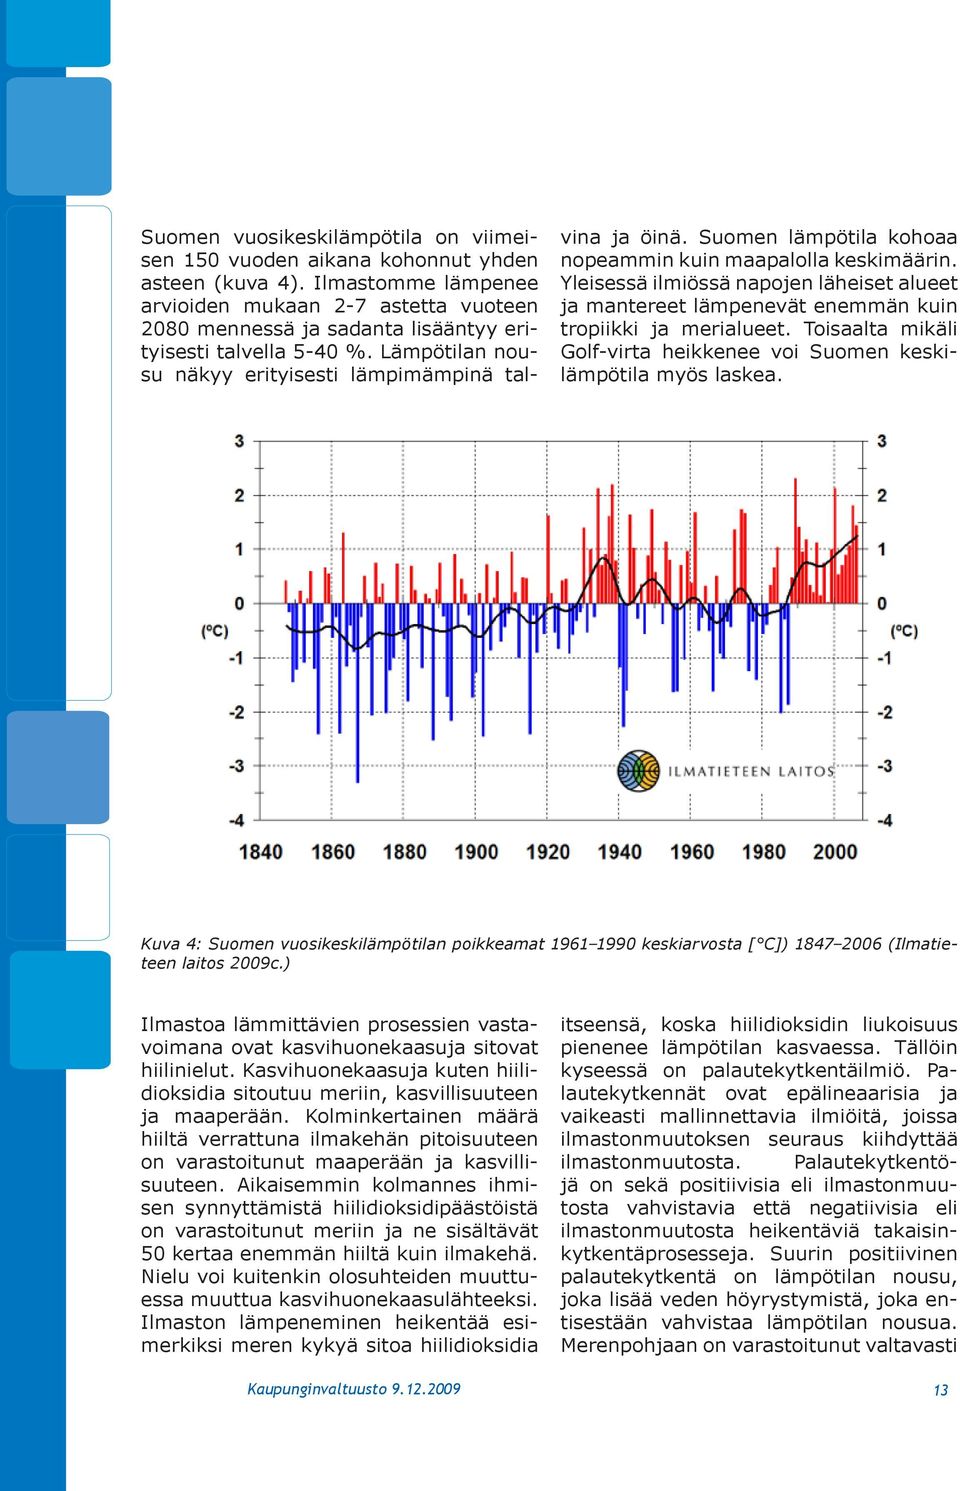 Suomen lämpötila kohoaa nopeammin kuin maapalolla keskimäärin. Yleisessä ilmiössä napojen läheiset alueet ja mantereet lämpenevät enemmän kuin tropiikki ja merialueet.